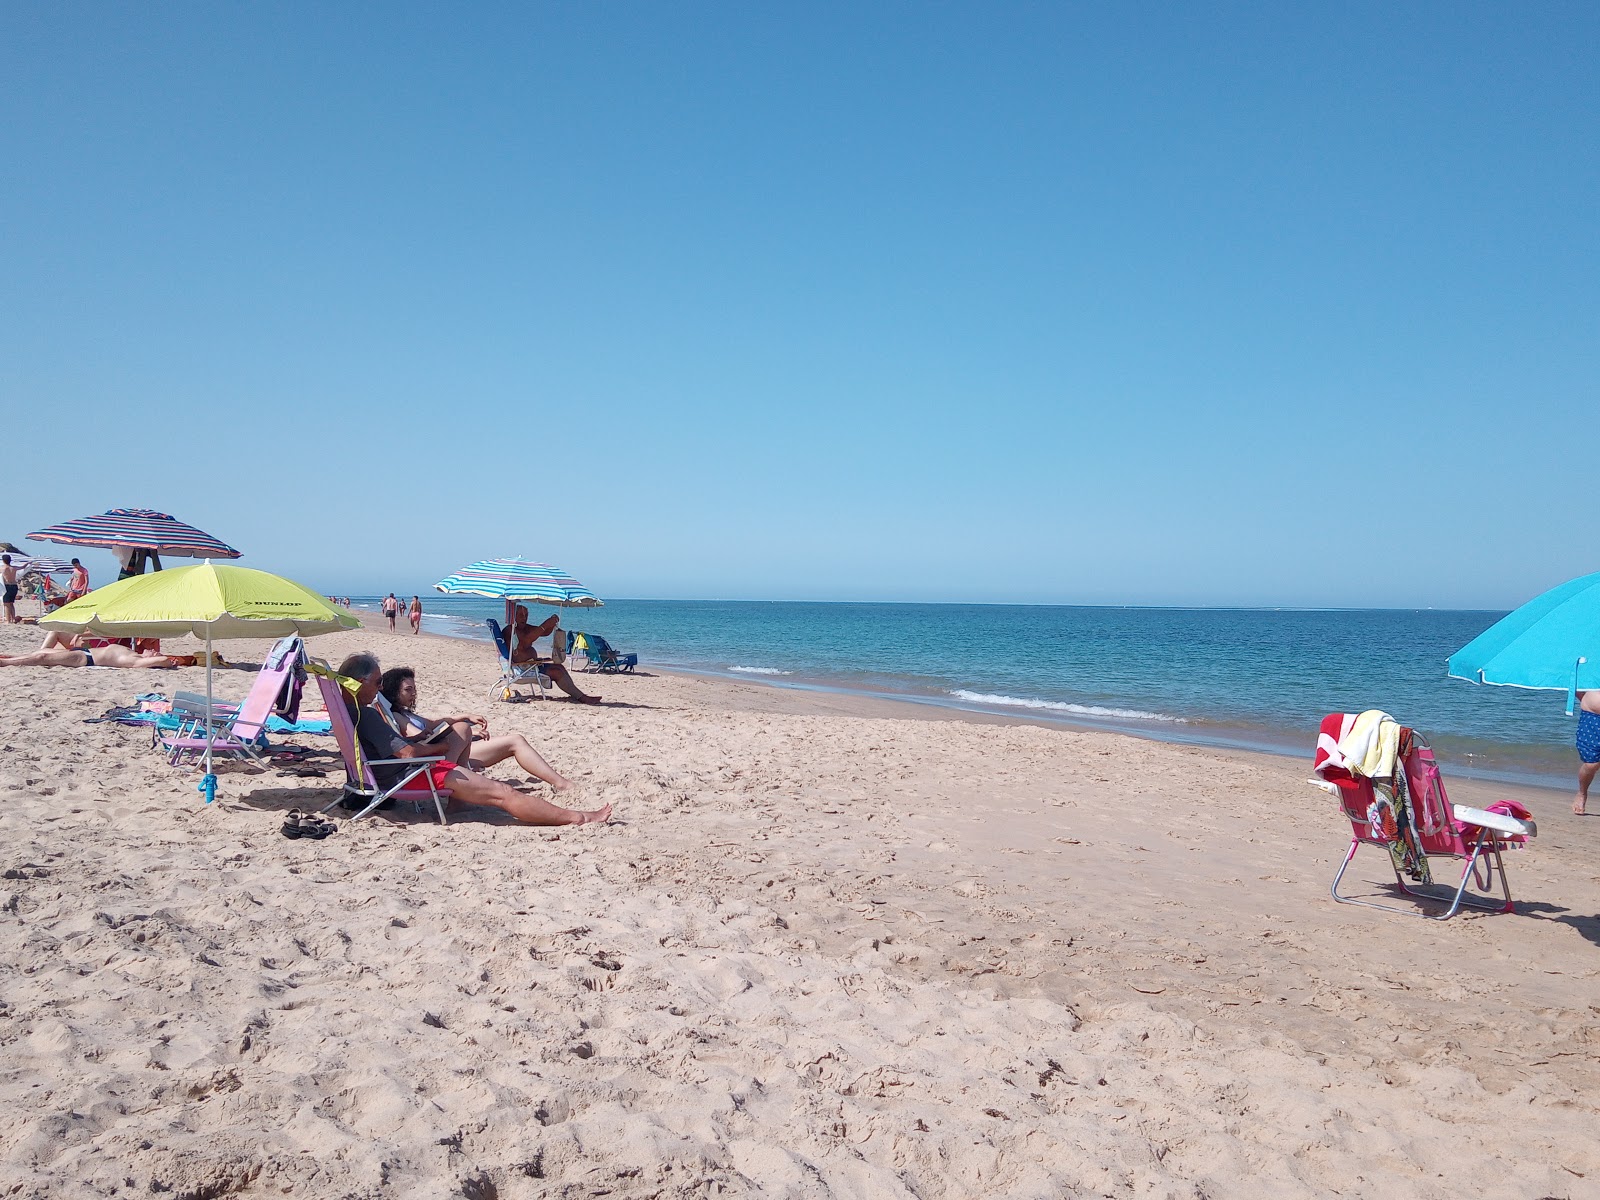 Rota Plajı'in fotoğrafı - Çocuklu aile gezginleri için önerilir